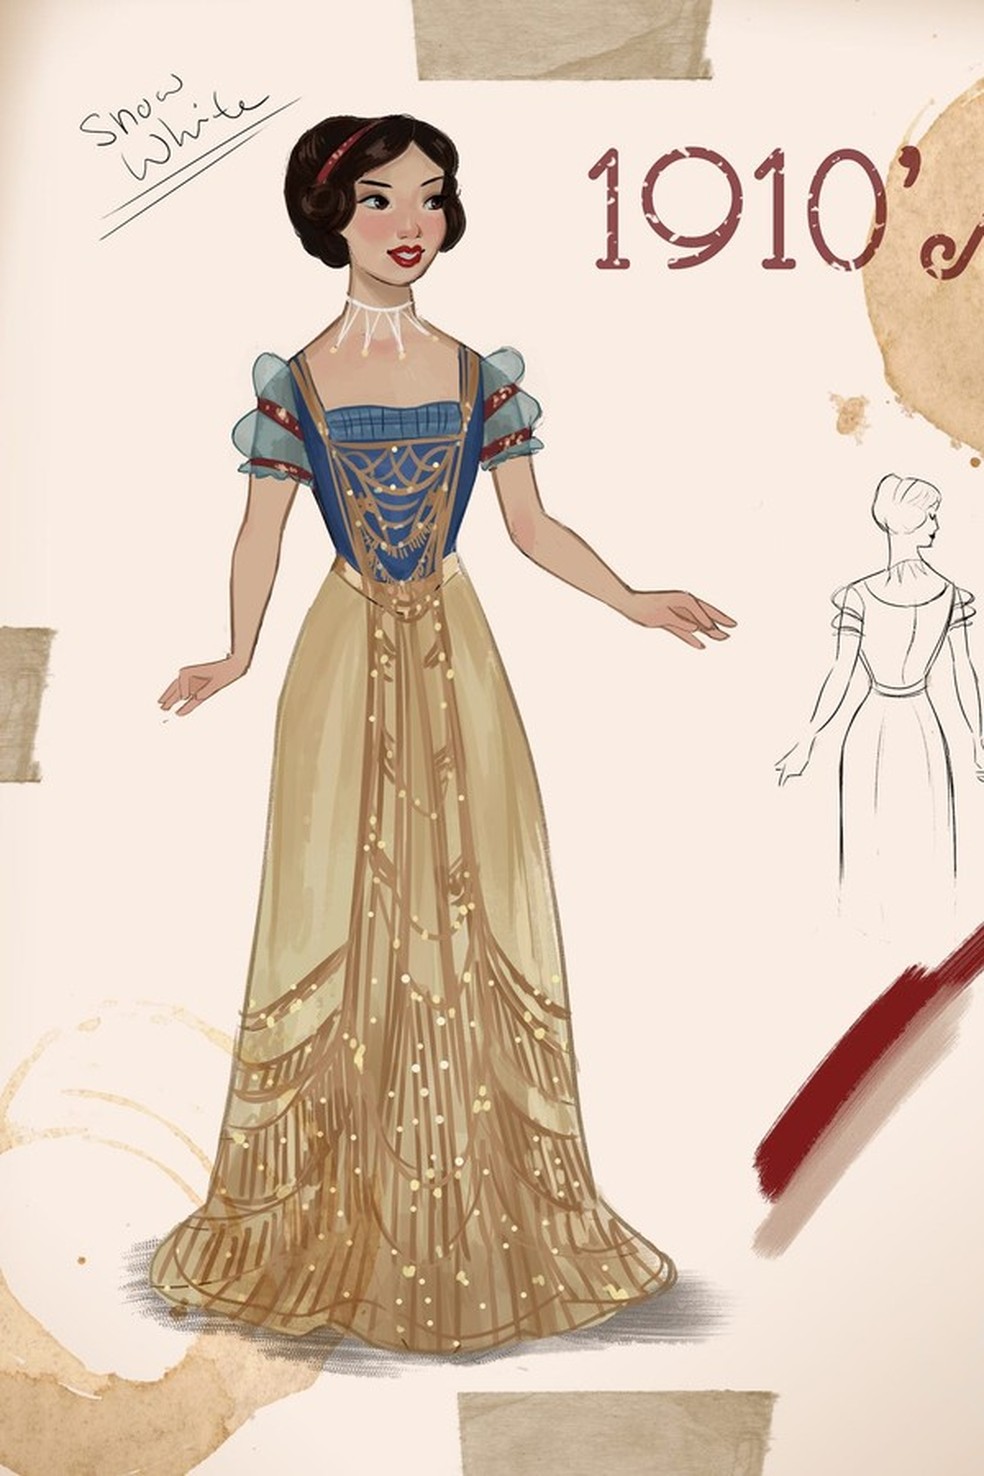 Disney cria vestidos de noiva inspirados em princesas - Revista Crescer